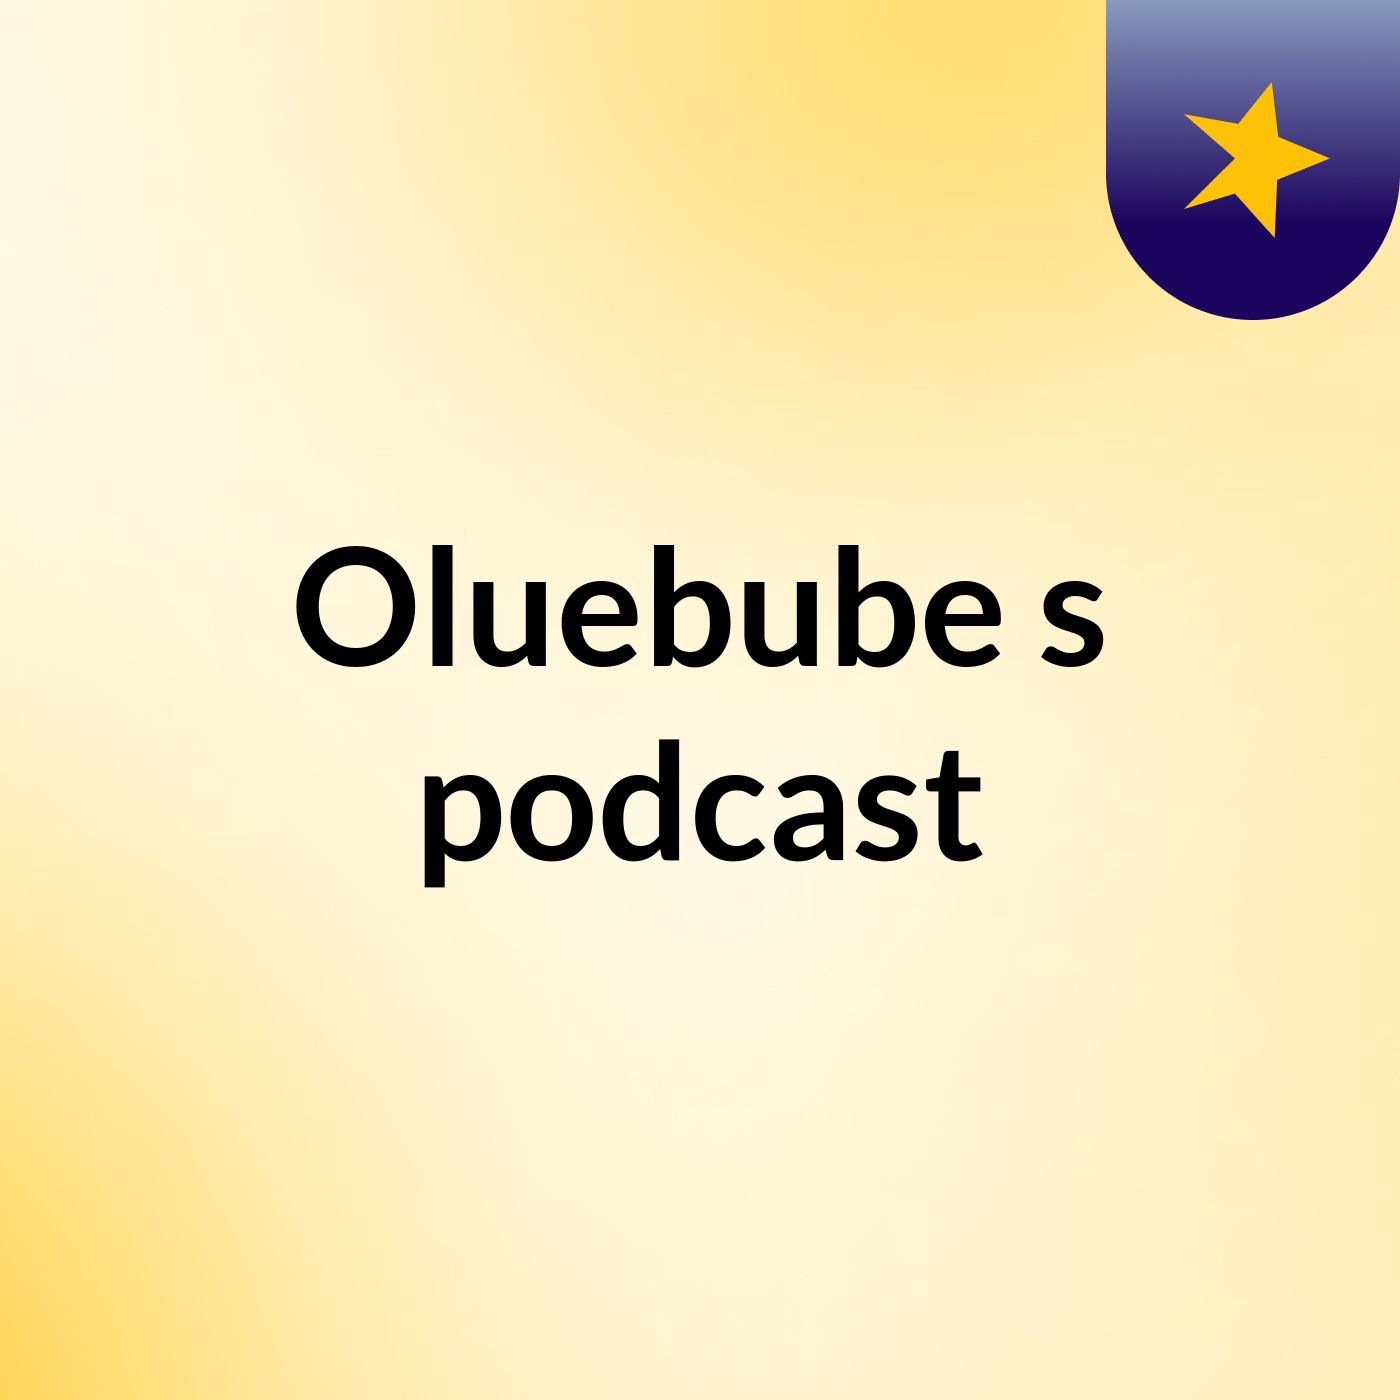 Oluebube's podcast